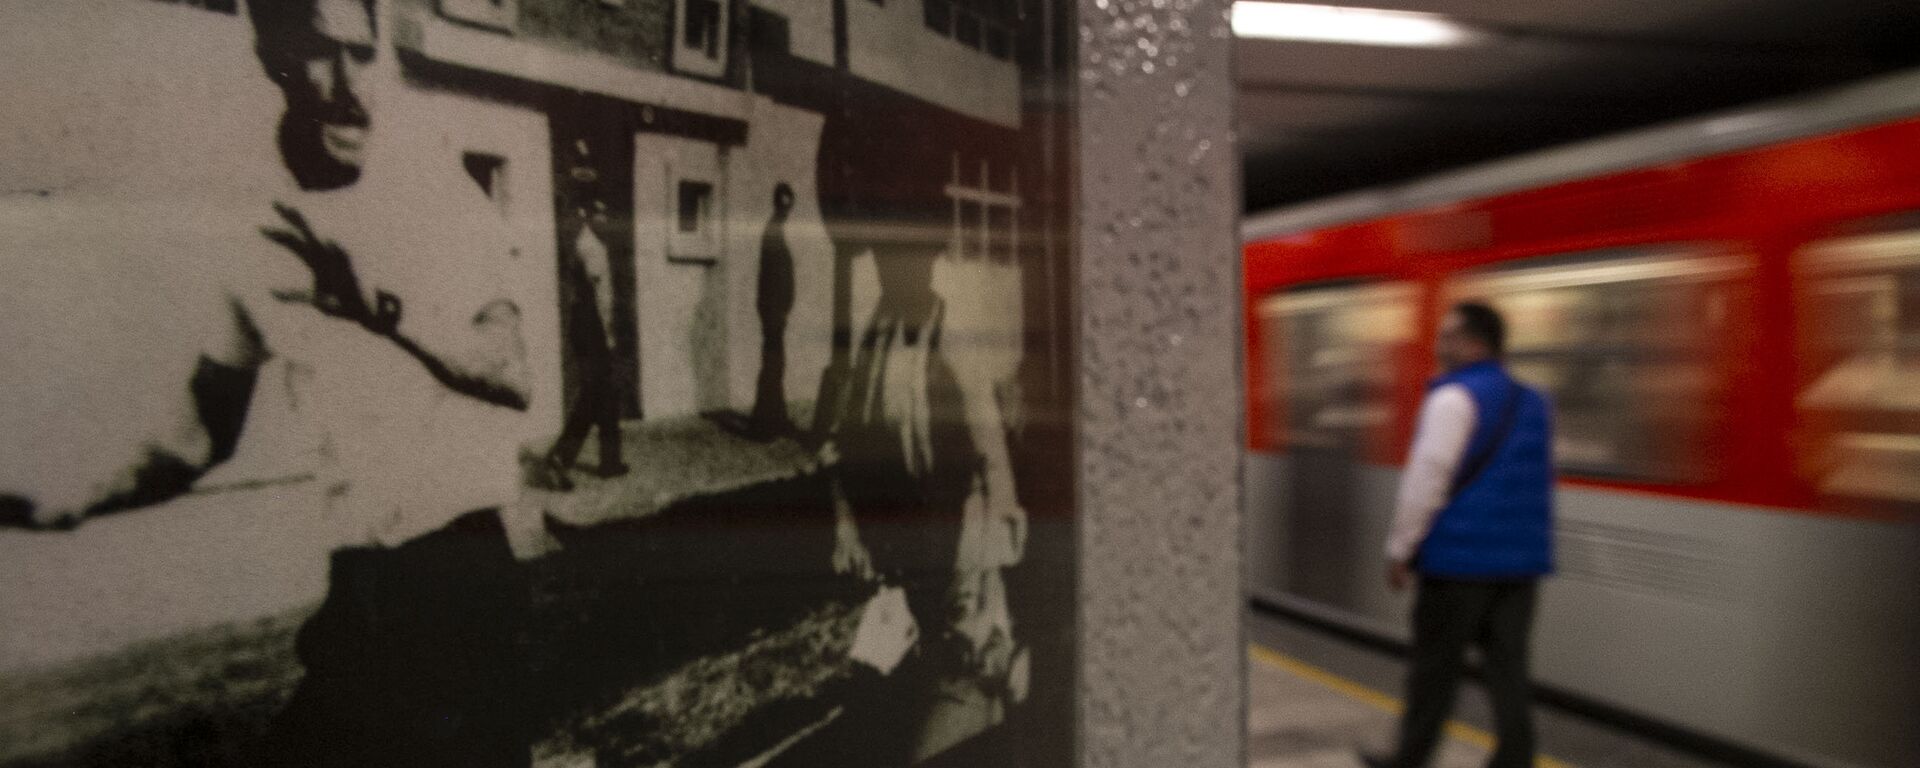 Fotografía de la masacre del 10 de junio del 1971 en el metro Normal - Sputnik Mundo, 1920, 15.04.2019